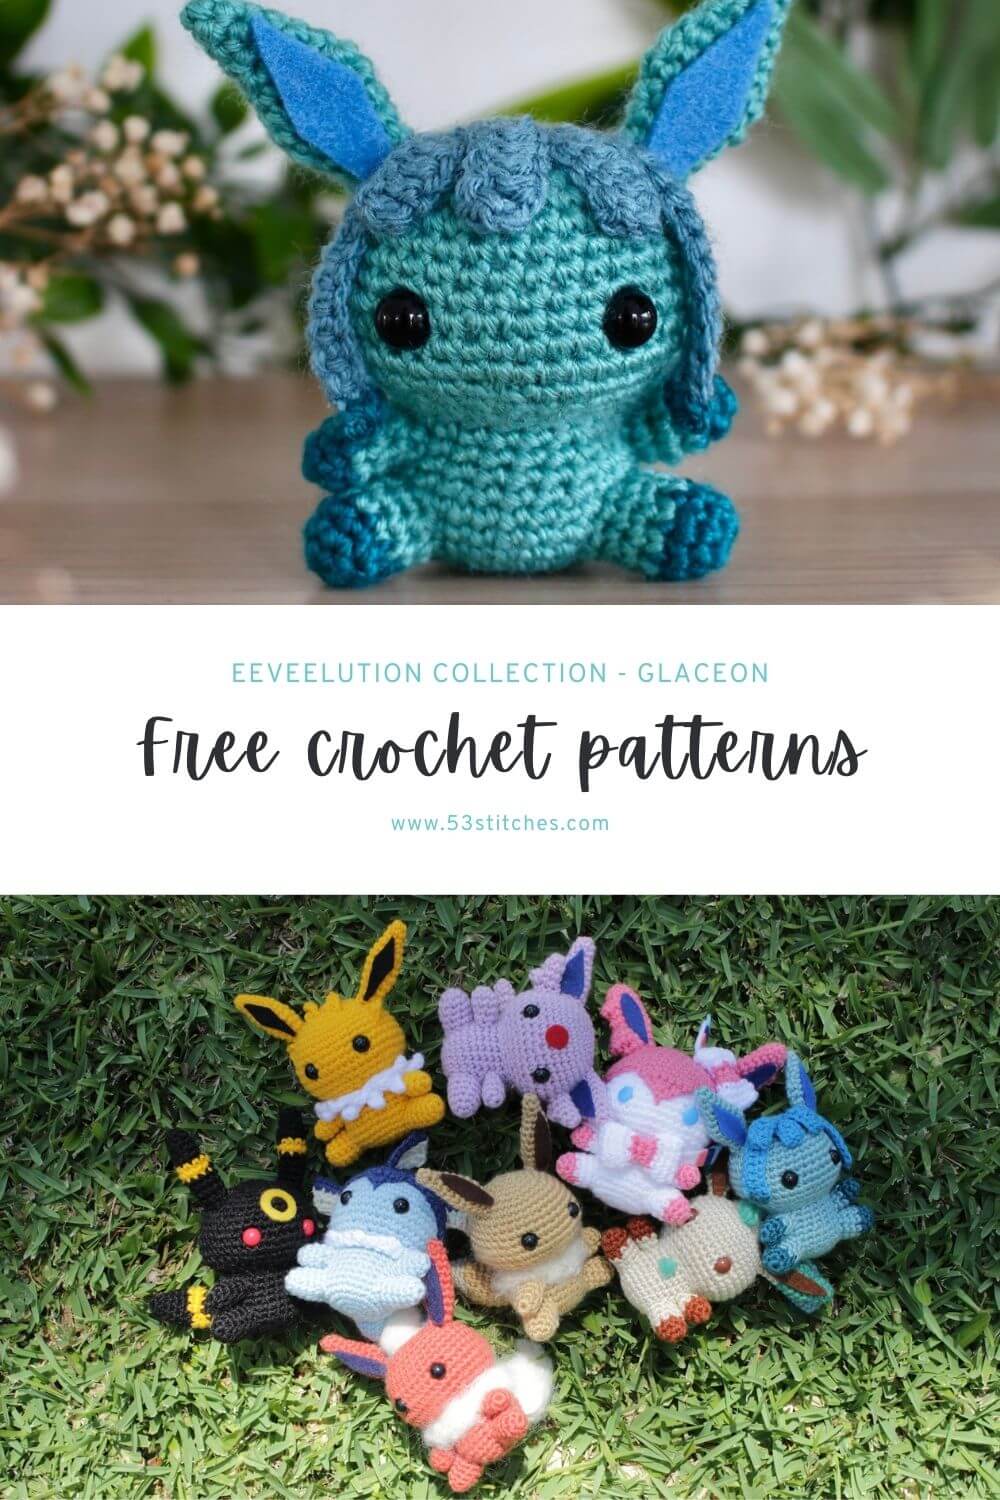 Glaceon crochet pattern